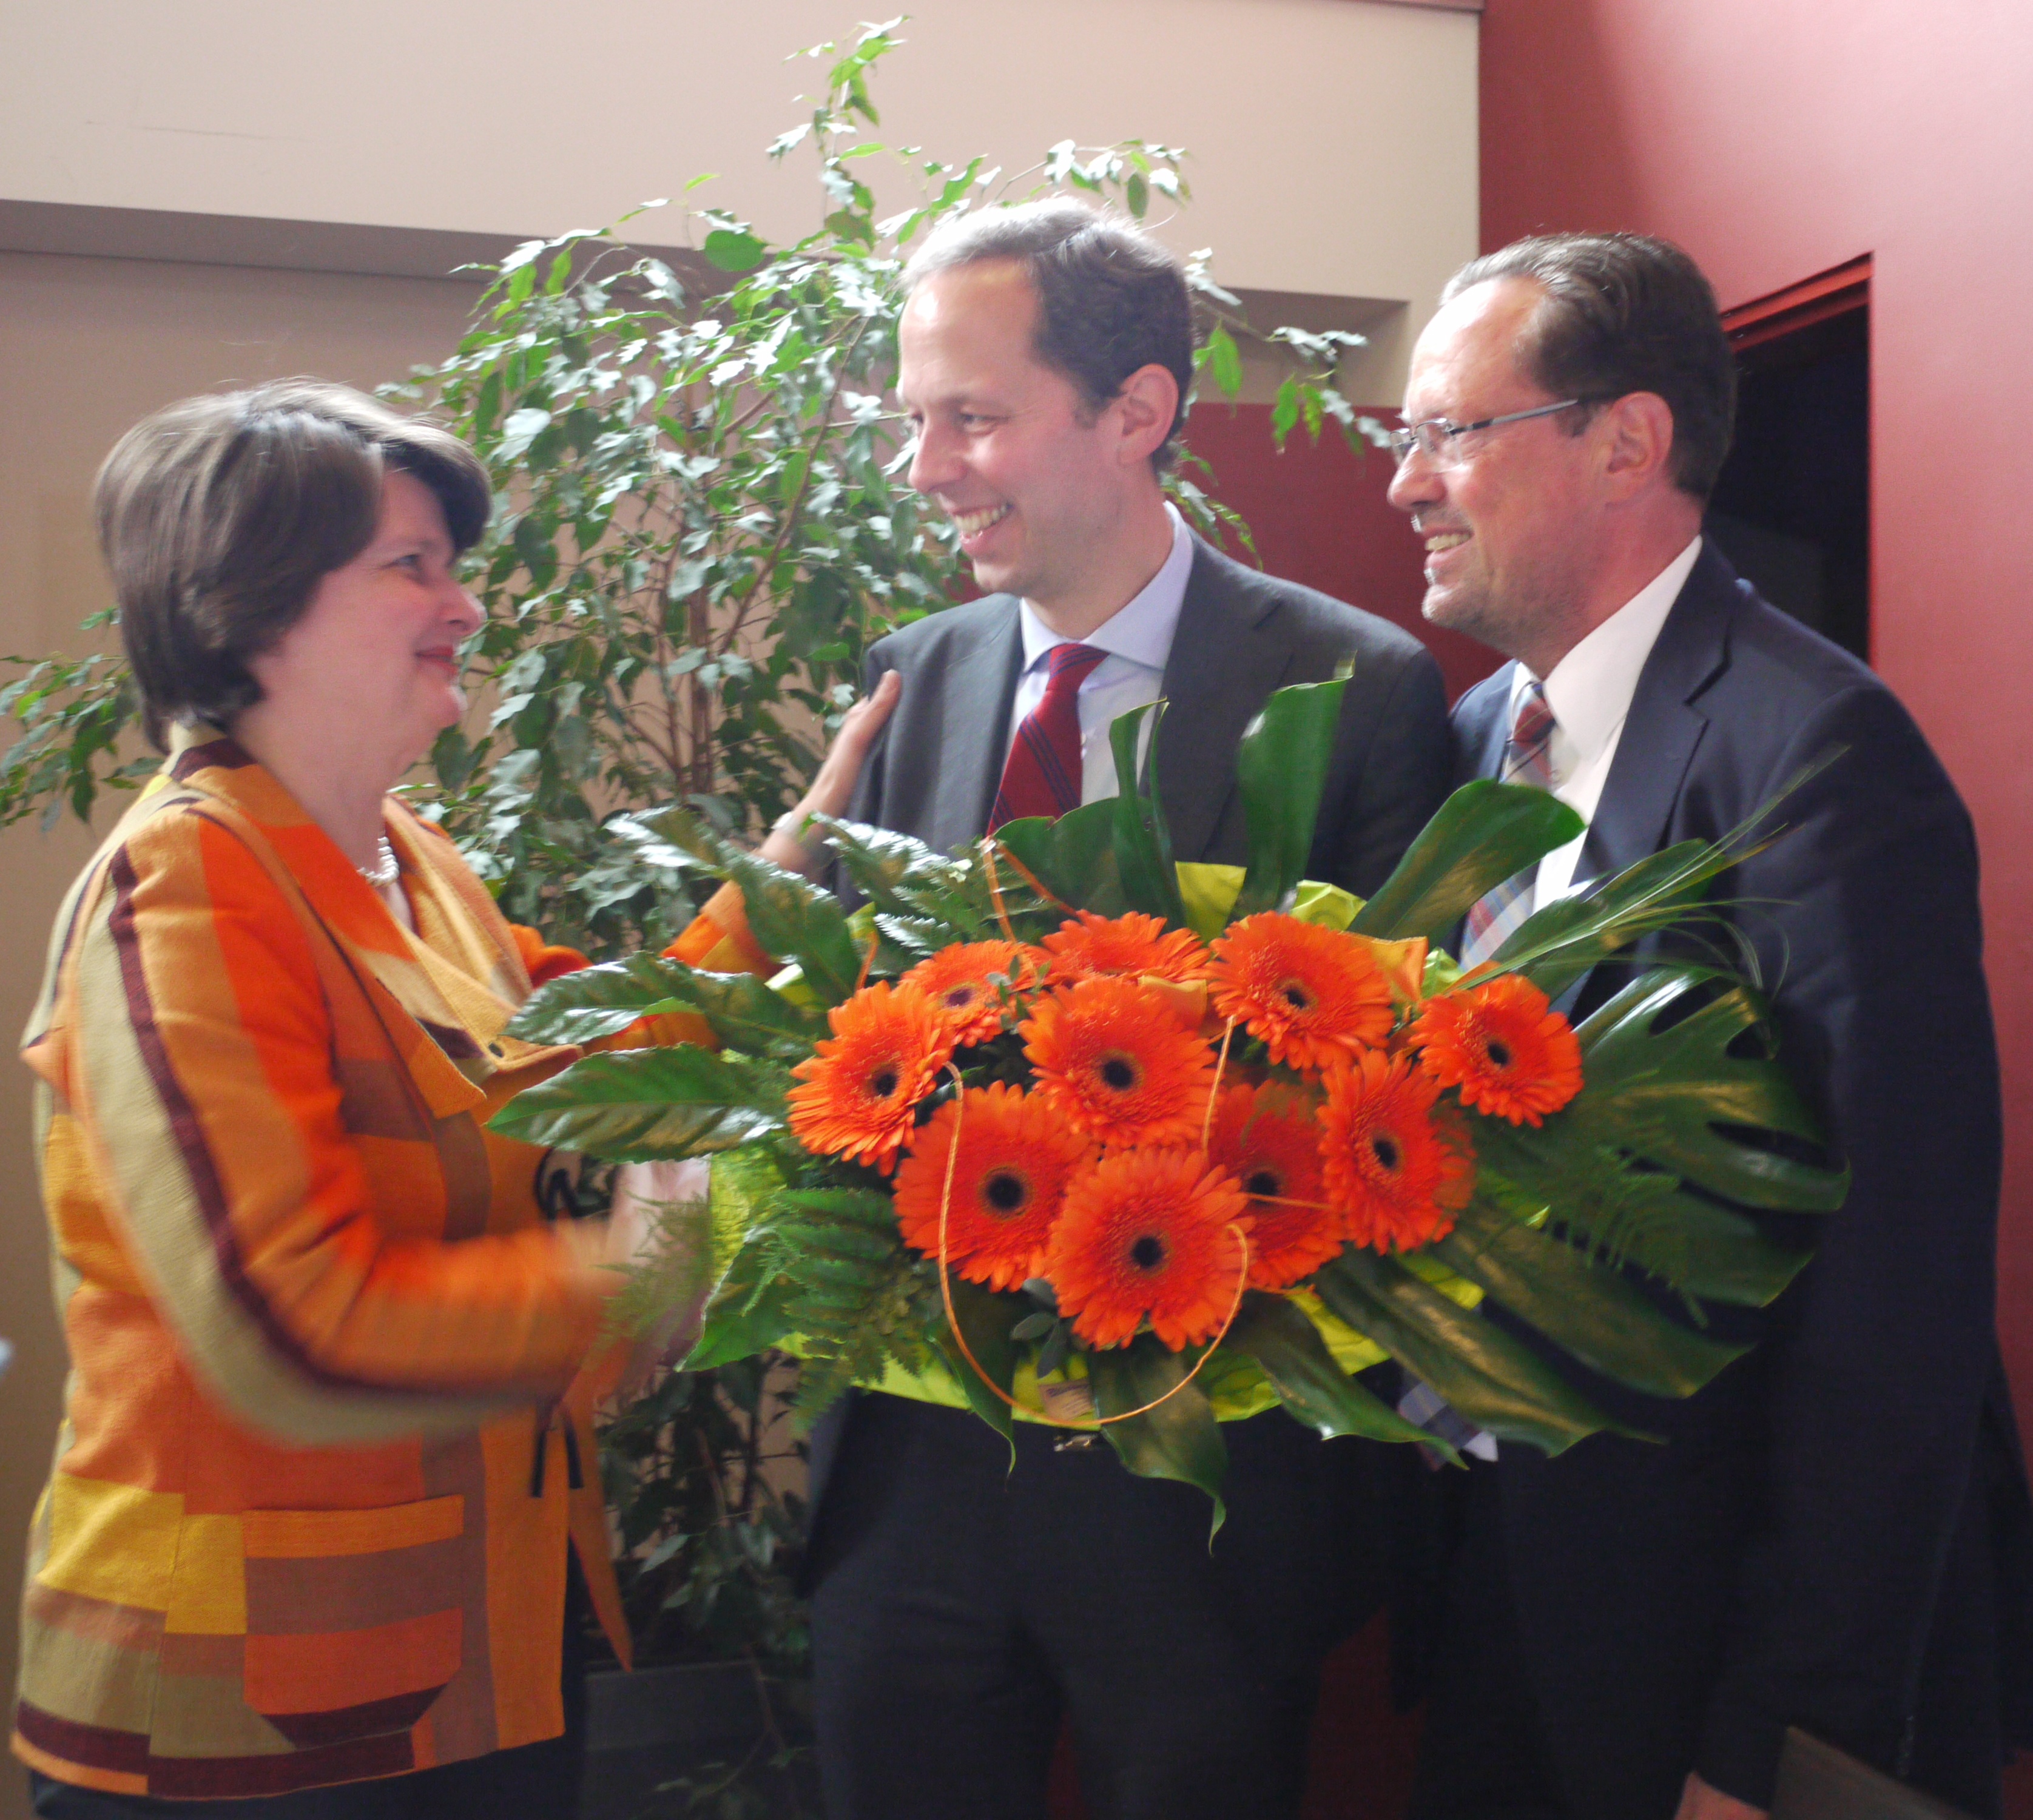 CDU-Bezirksvorsitzende Dr. Maria Flachsbarth MdB und der CDU-Kreisvorsitzender Dirk Toepffer MdL gratulieren Dr. Hendrik Hoppenstedt MdB (mi.) mit einem Blumenstrauß.